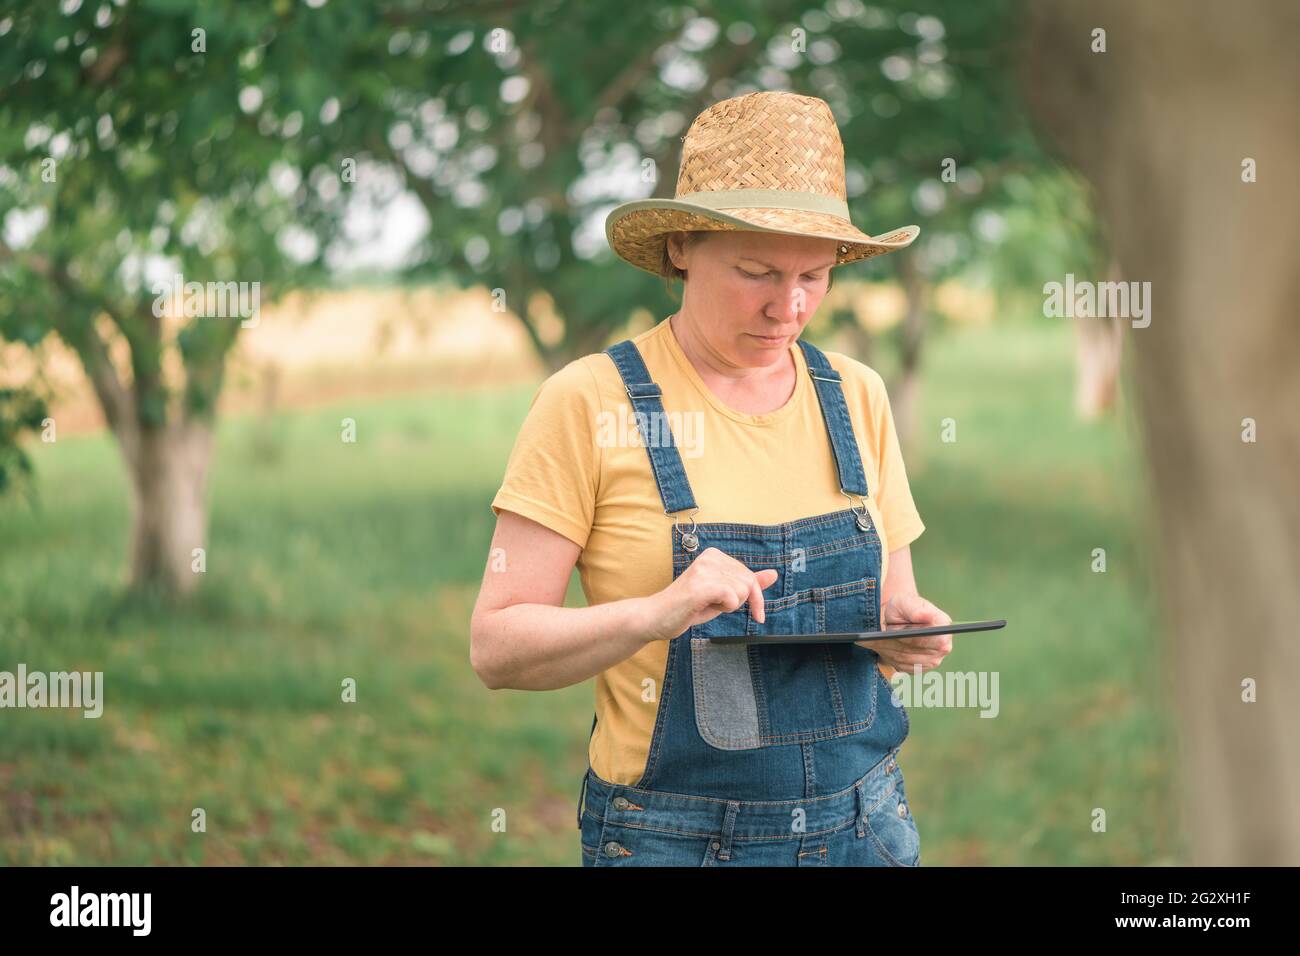 Agricultrice utilisant une tablette numérique dans le verger de noyer anglais, technologie moderne innovante dans l'élevage de fruits de noyer biologique Banque D'Images